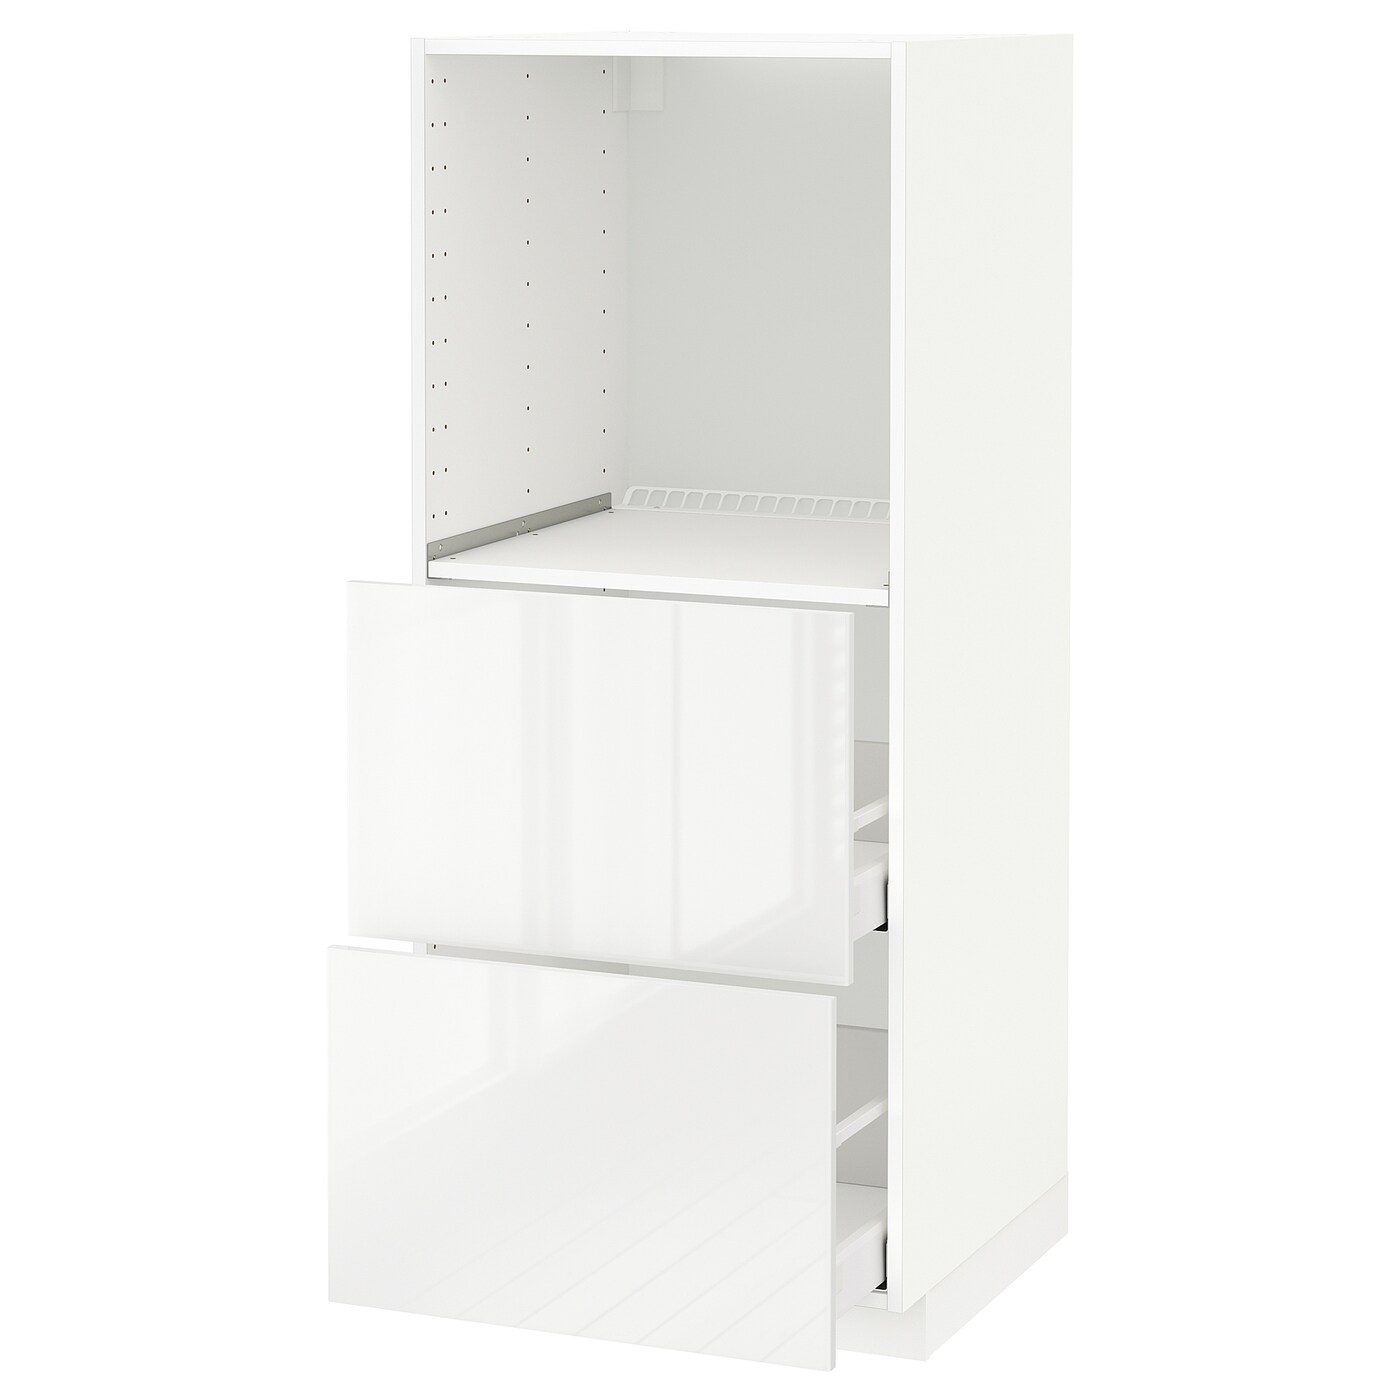 Напольный шкаф - METOD / MAXIMERA IKEA/ МЕТОД/ МАКСИМЕРА ИКЕА,  148х60 см, белый